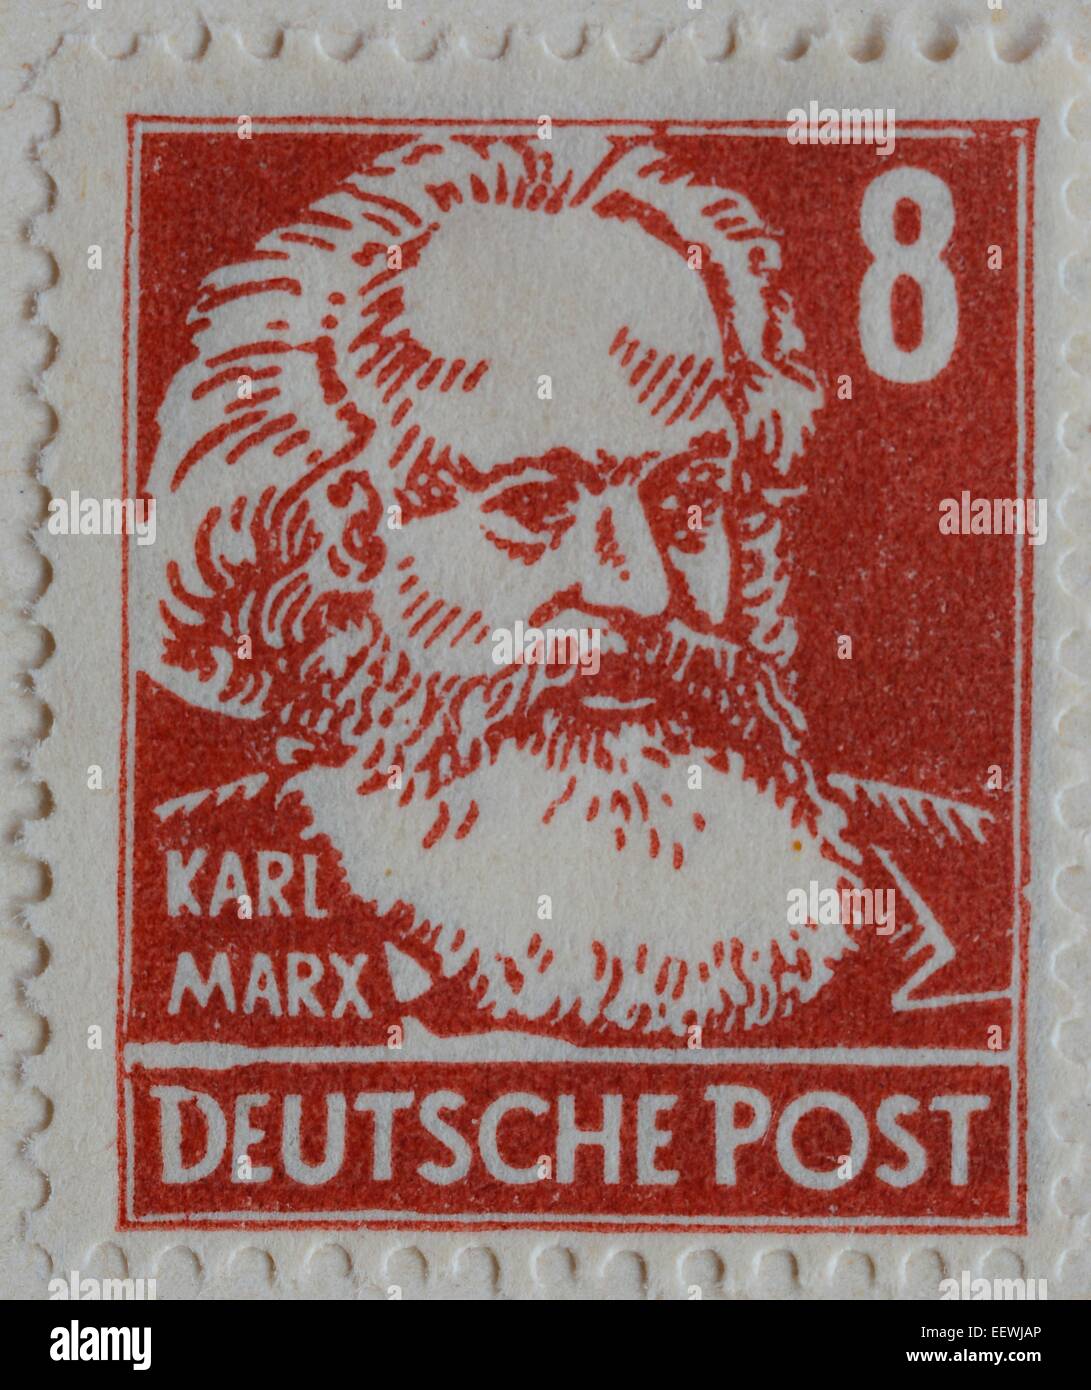 Karl Marx, un philosophe allemand, économiste, sociologue, et révolutionnaire socialiste, portrait sur un timbre Allemand, 1948 Banque D'Images